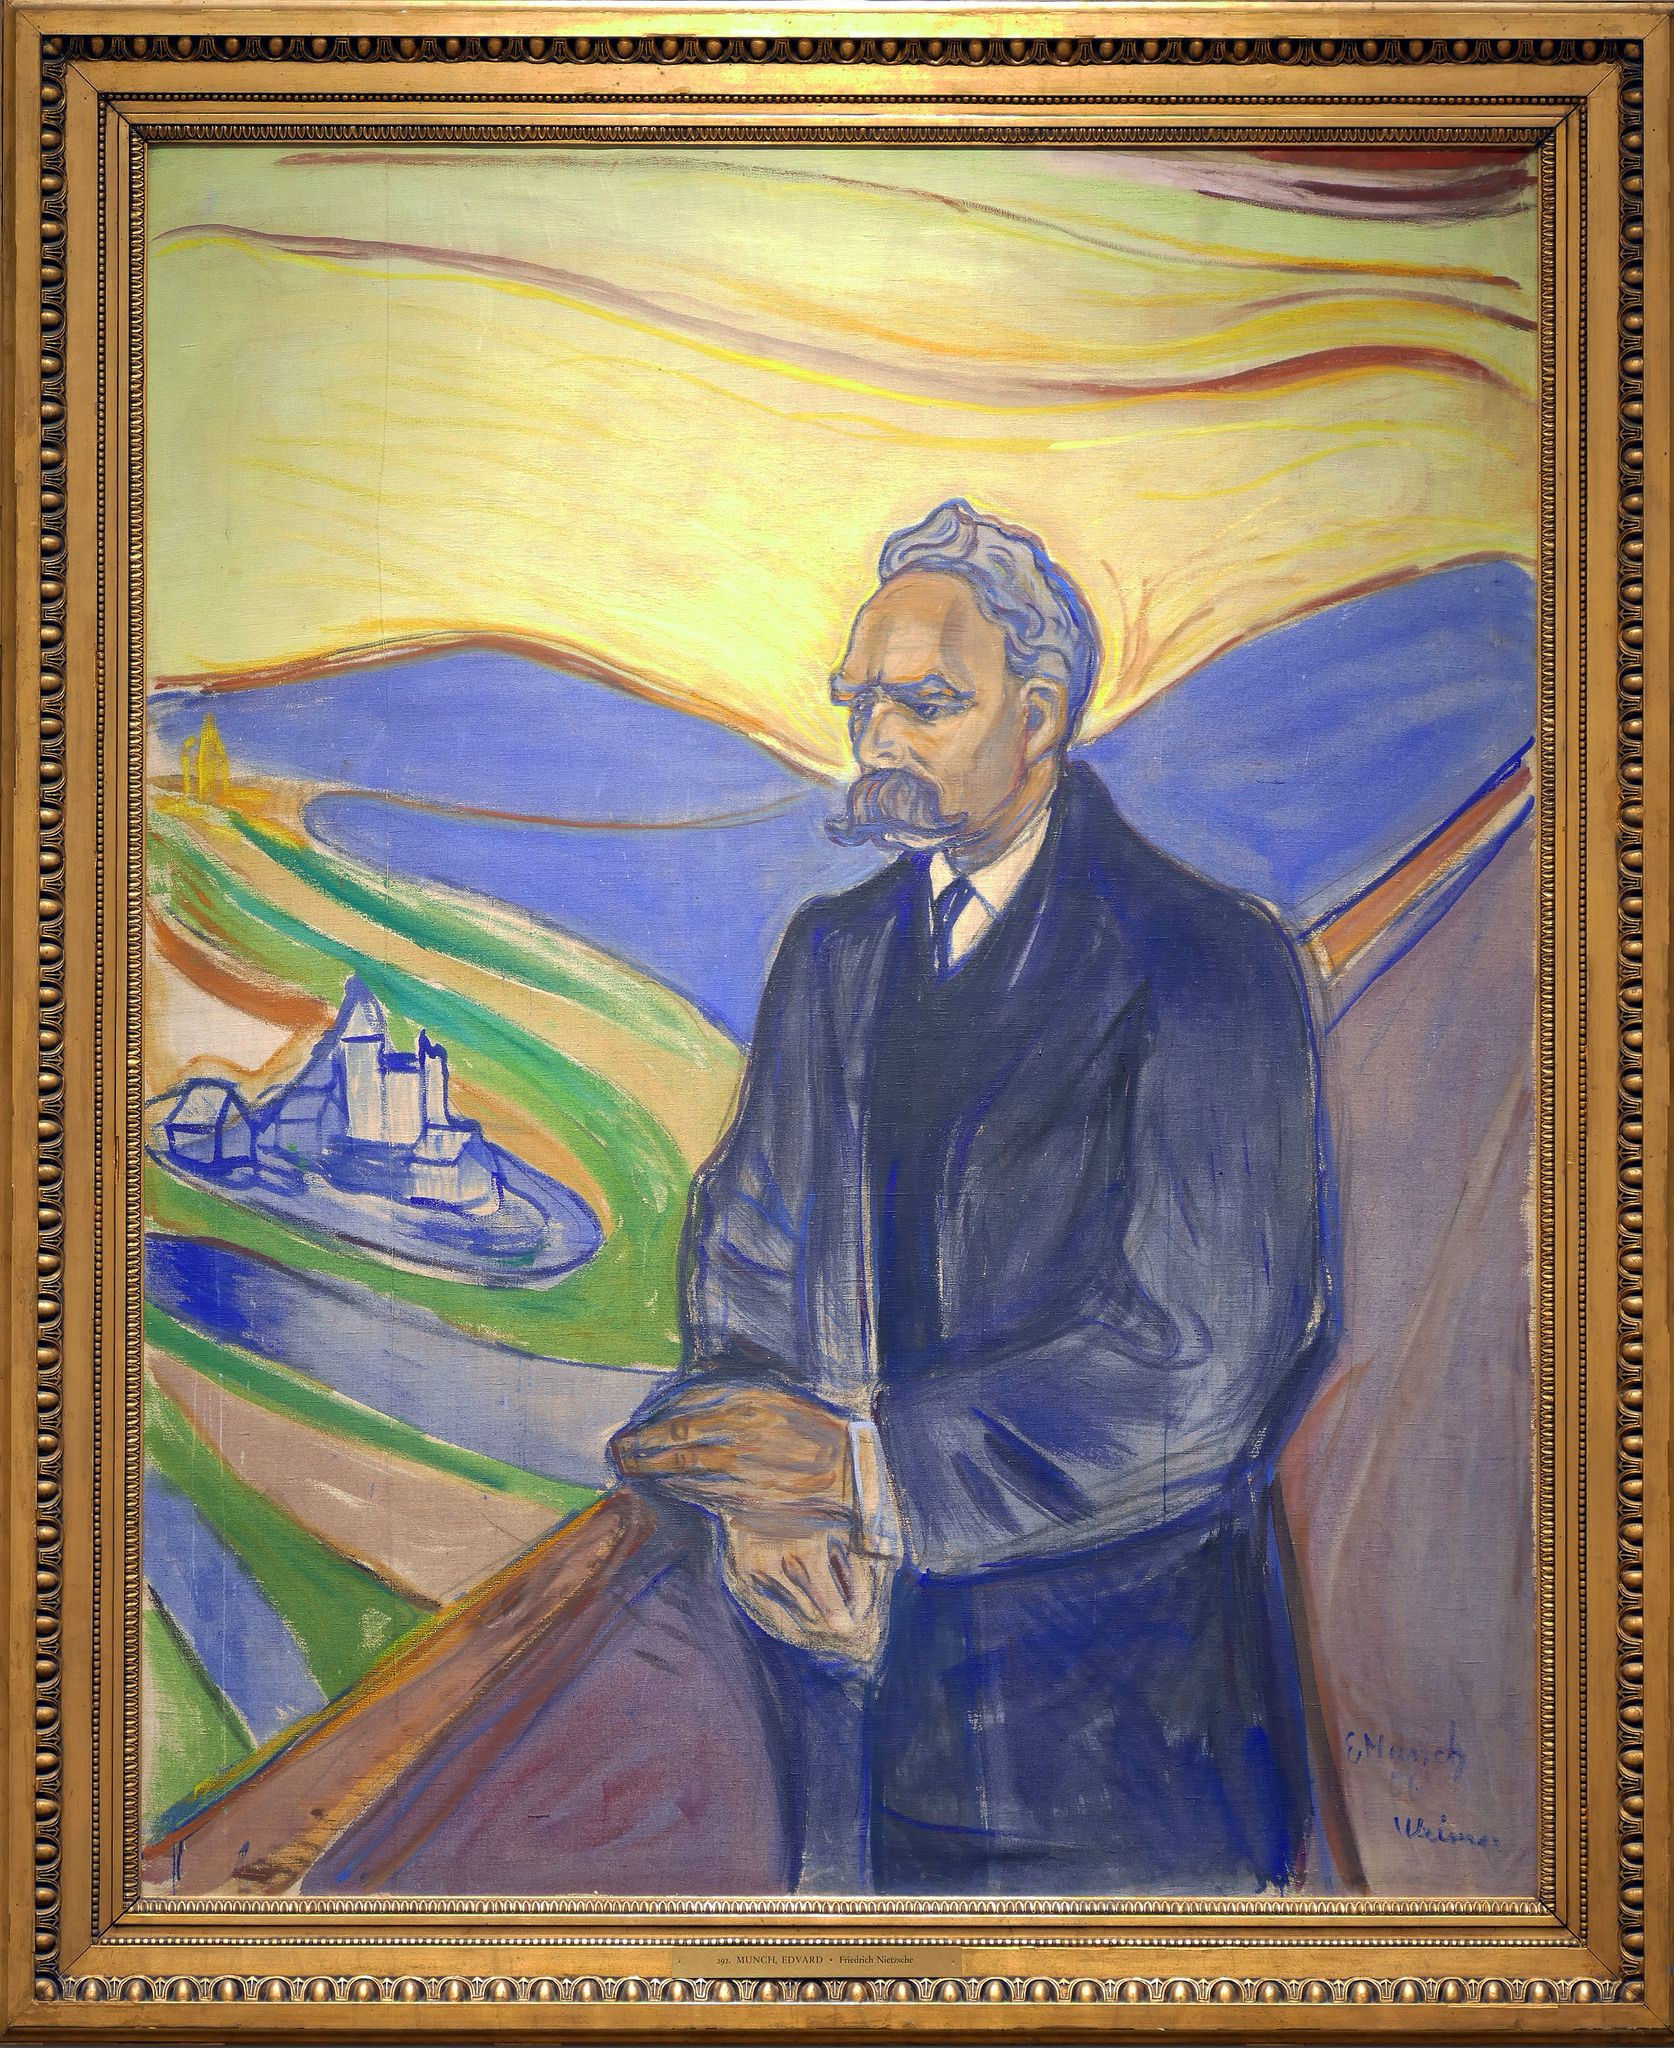 Portrait de Friedrich Nietzsche peint par Edvard Munch en 1906, ce peintre expressionniste bien connu était surtout connu pour son célèbre tableau 